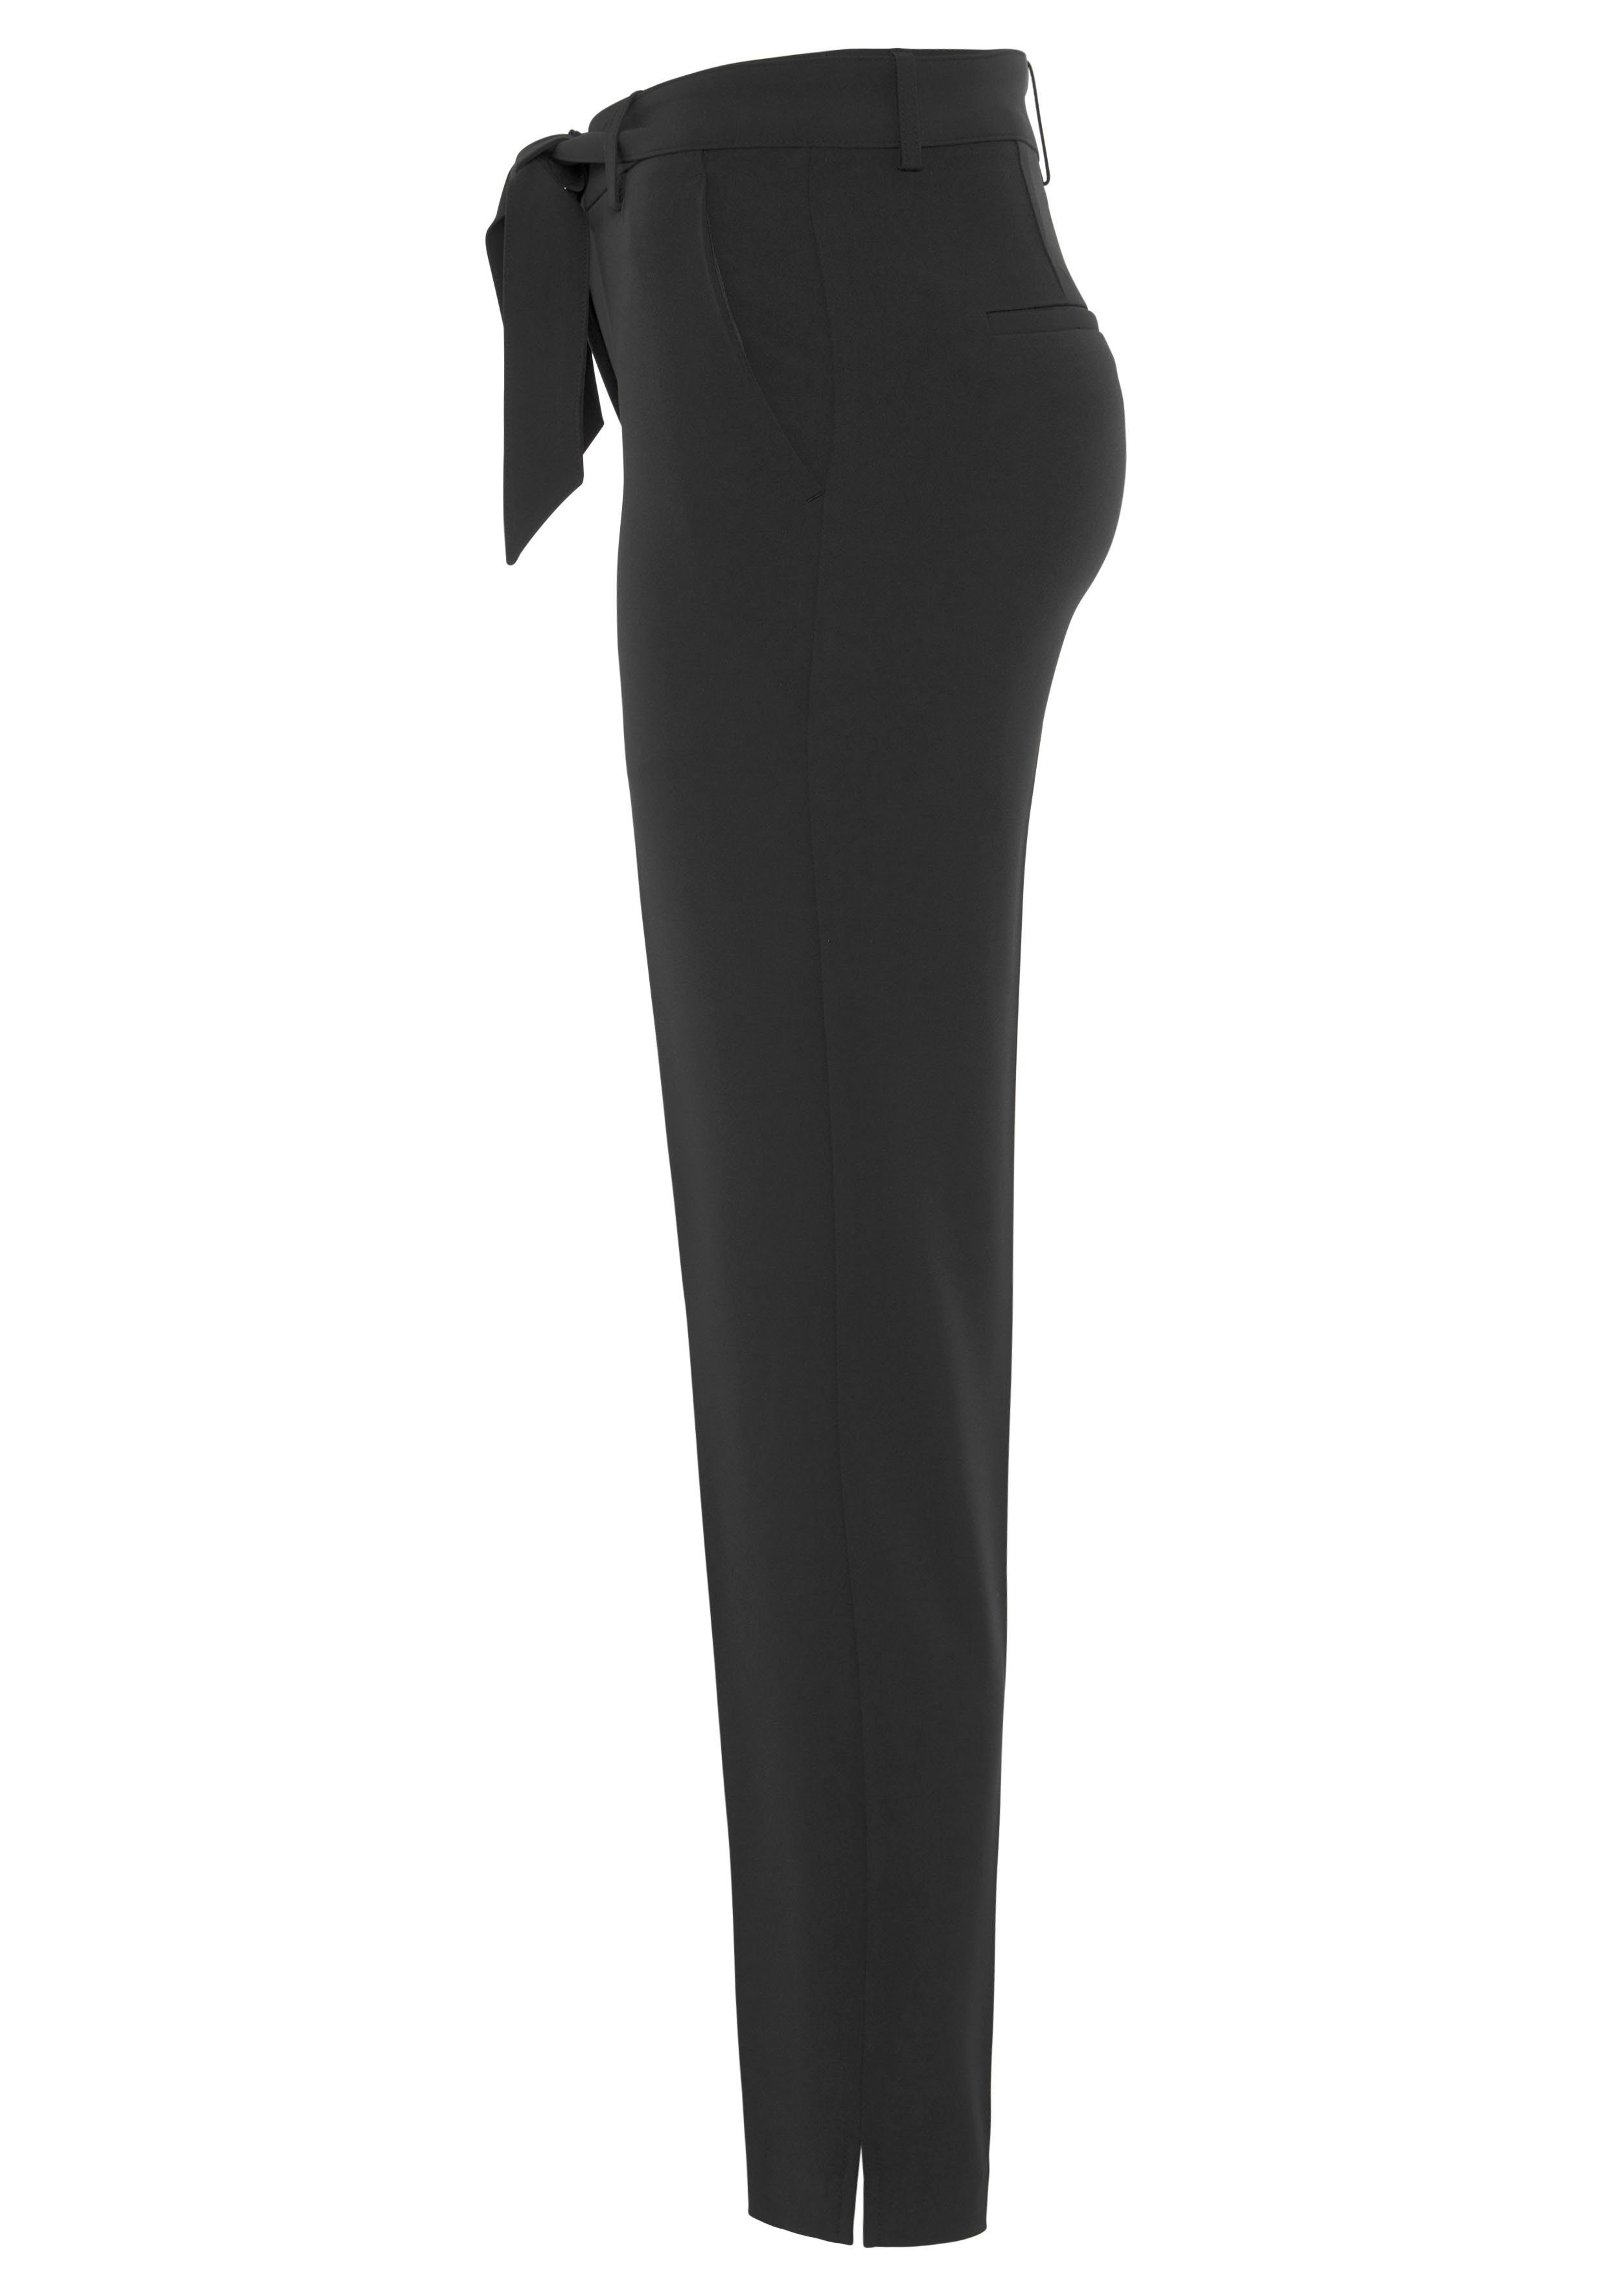 Bindegürtel (Set, PARIS mit 2-tlg., HECHTER Bindegürtel) schwarz mit Anzughose